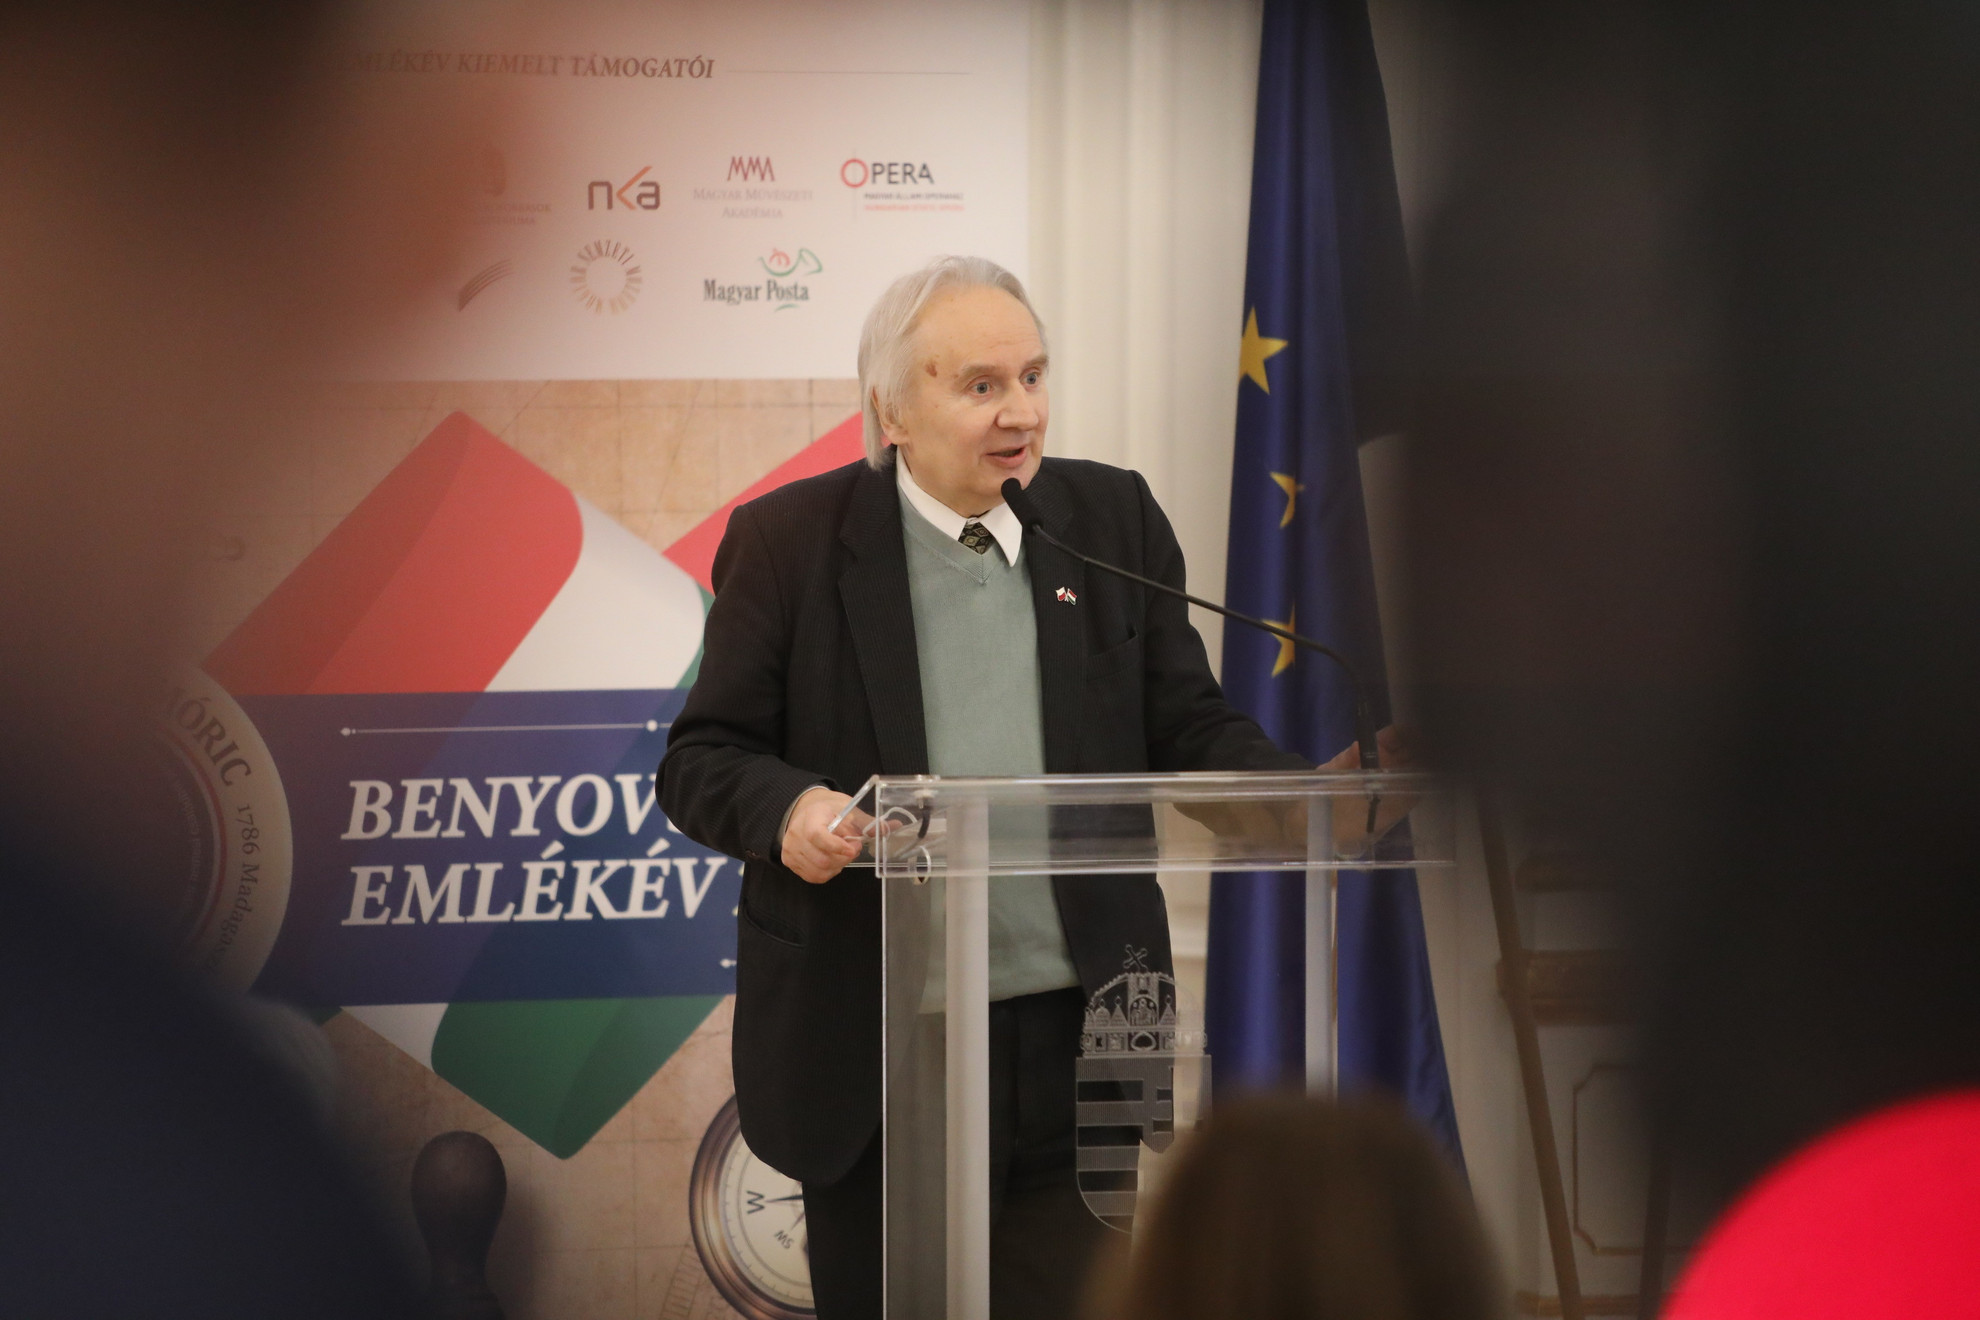 Jerzy Snopek, a Lengyel Köztársaság magyarországi nagykövete